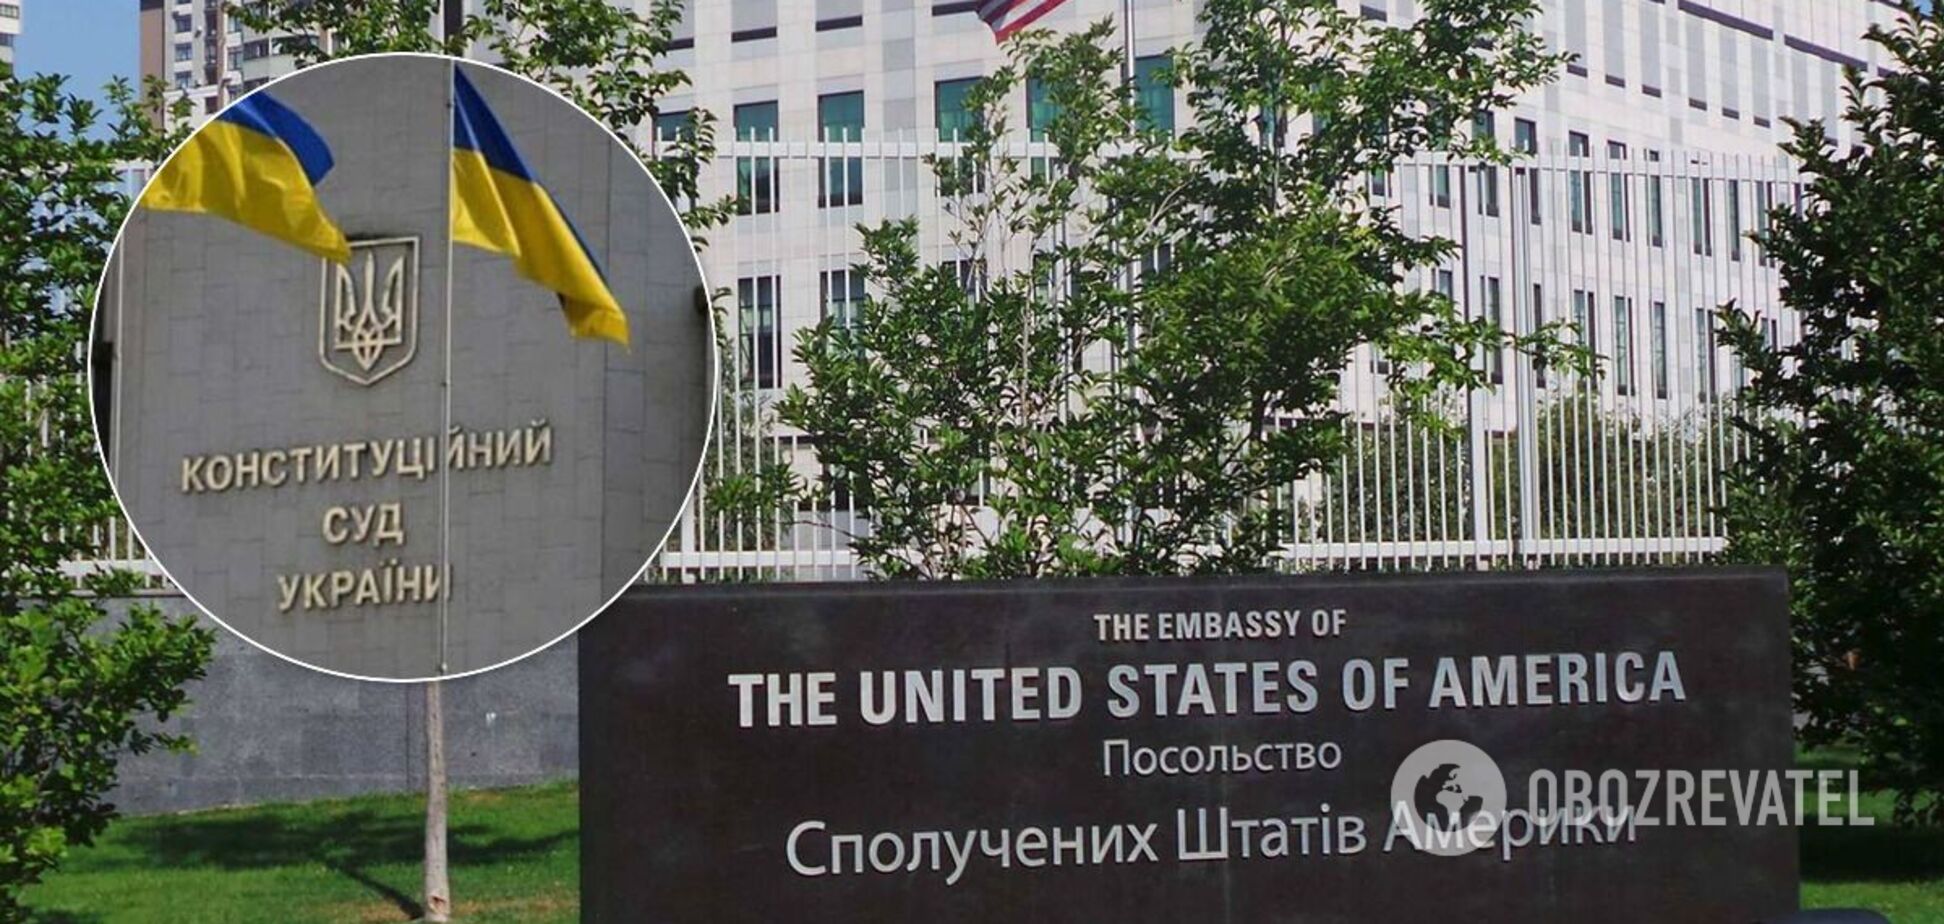 Украина воплотит стремления Революции Достоинства, когда общественный интерес перевесит корыстный, – посольство США